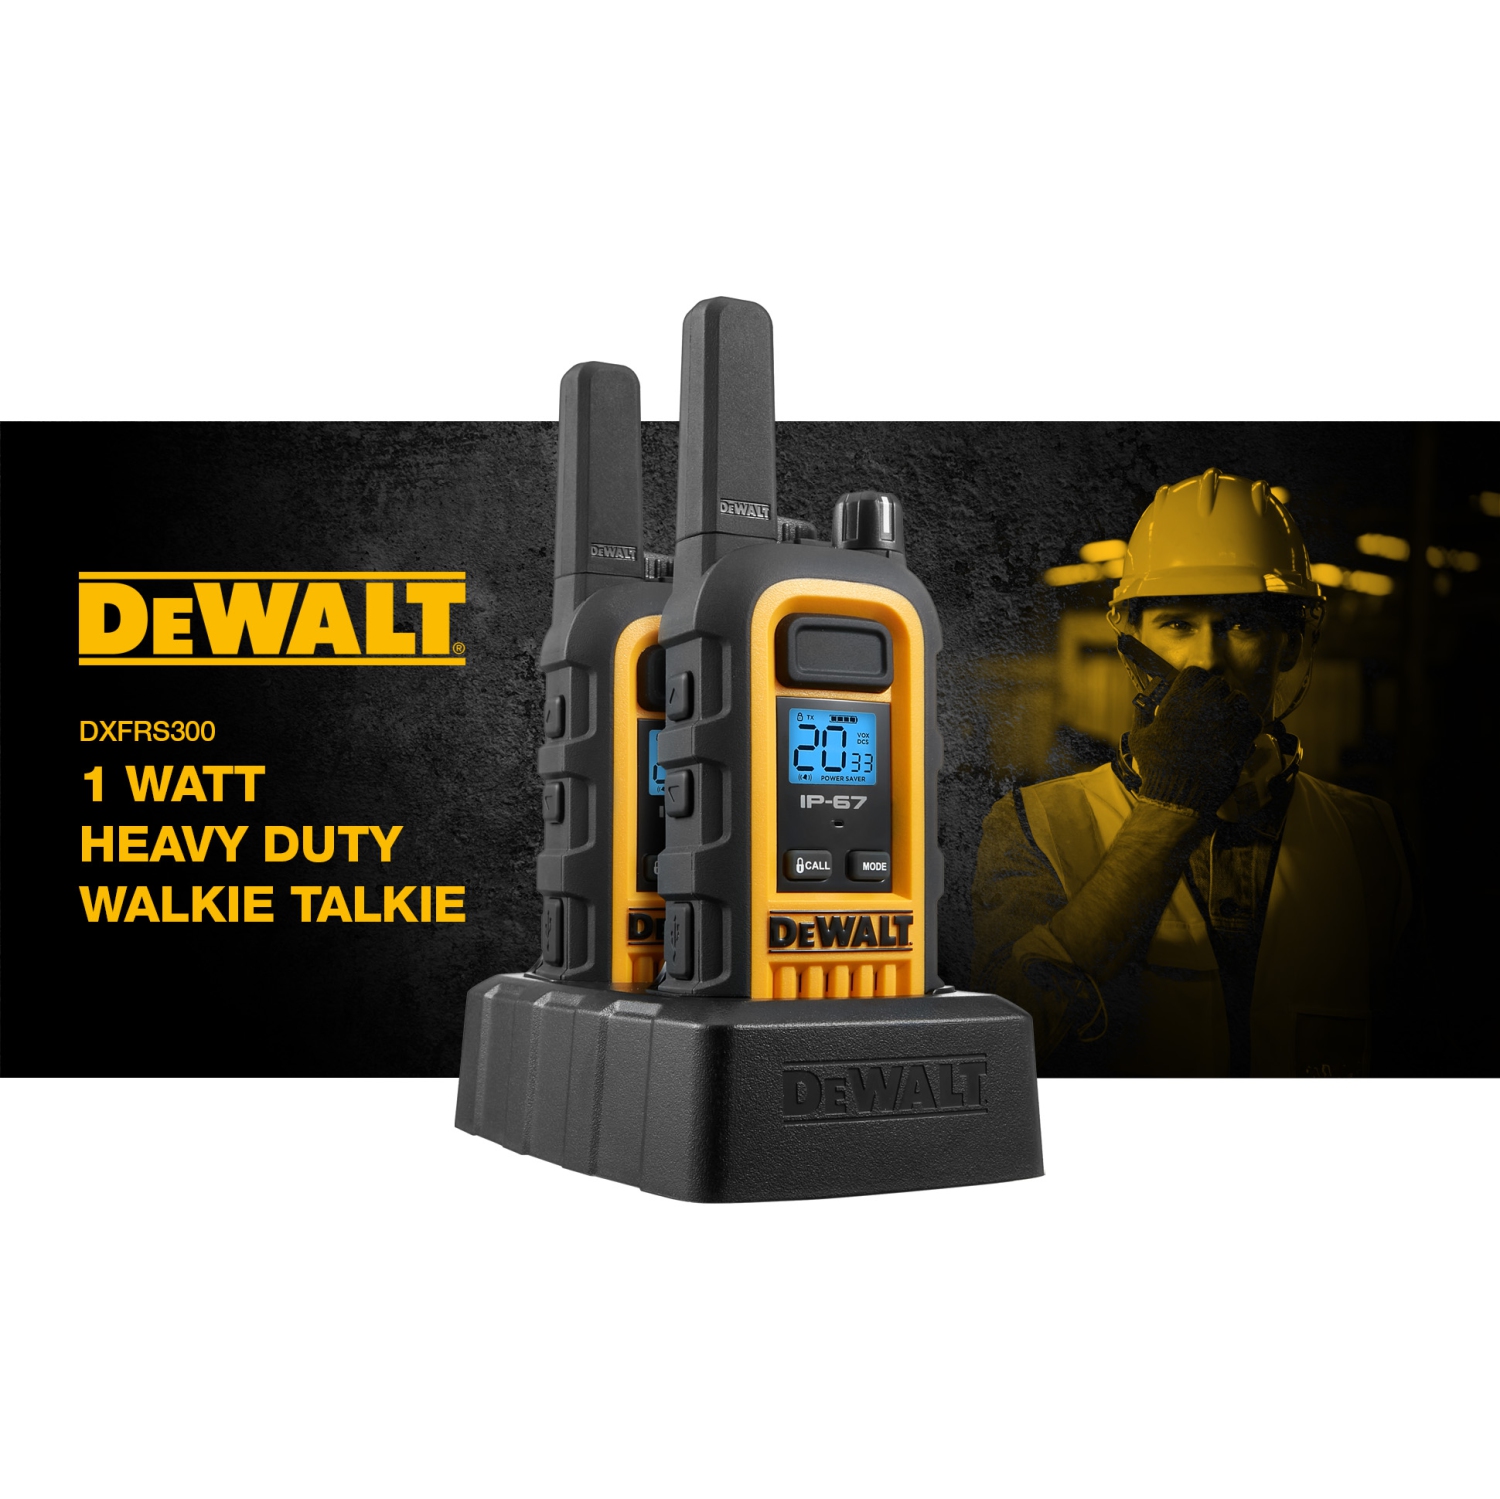 DEWALT DXFRS300 Watt Heavy Duty Walkie Talkies Waterproof, Shock Resistant, Long Range ＆ Rechargeable Two-Way Radio with VOX (2 Pack)